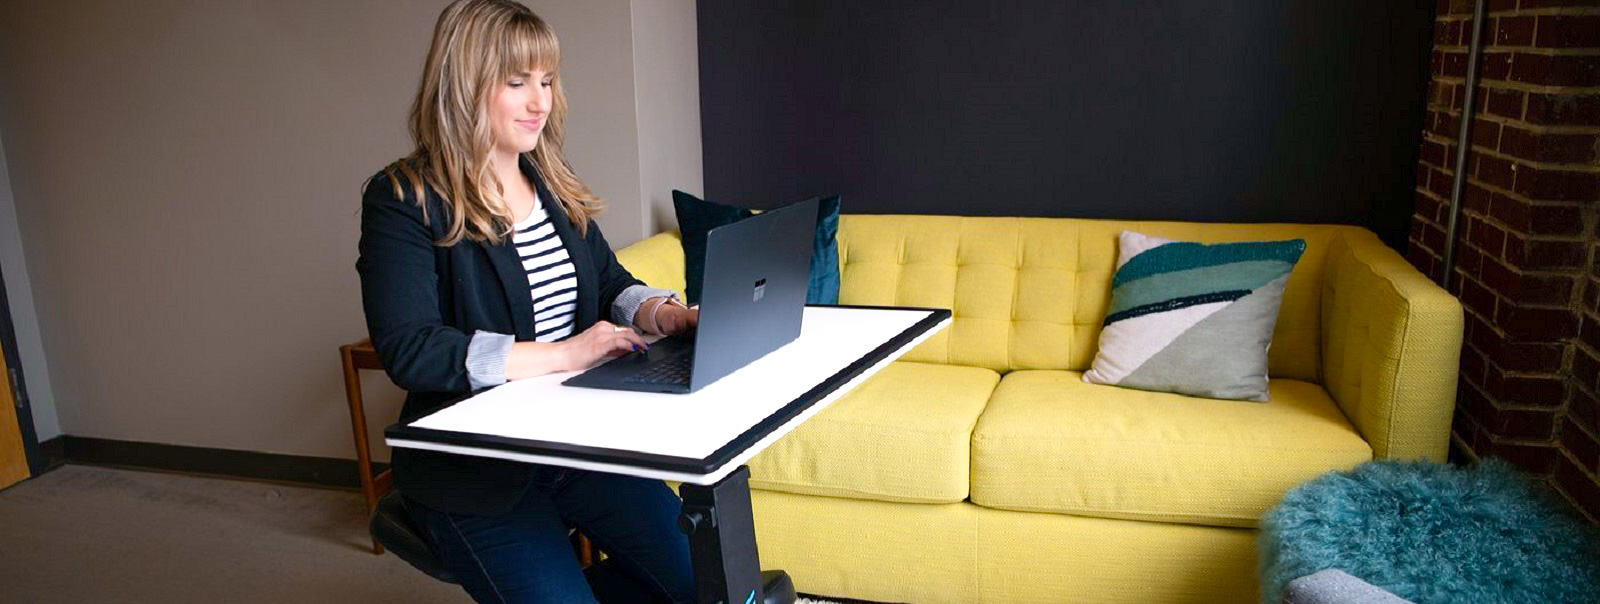 The Edge Desk - новий стіл для підвищення продуктивності